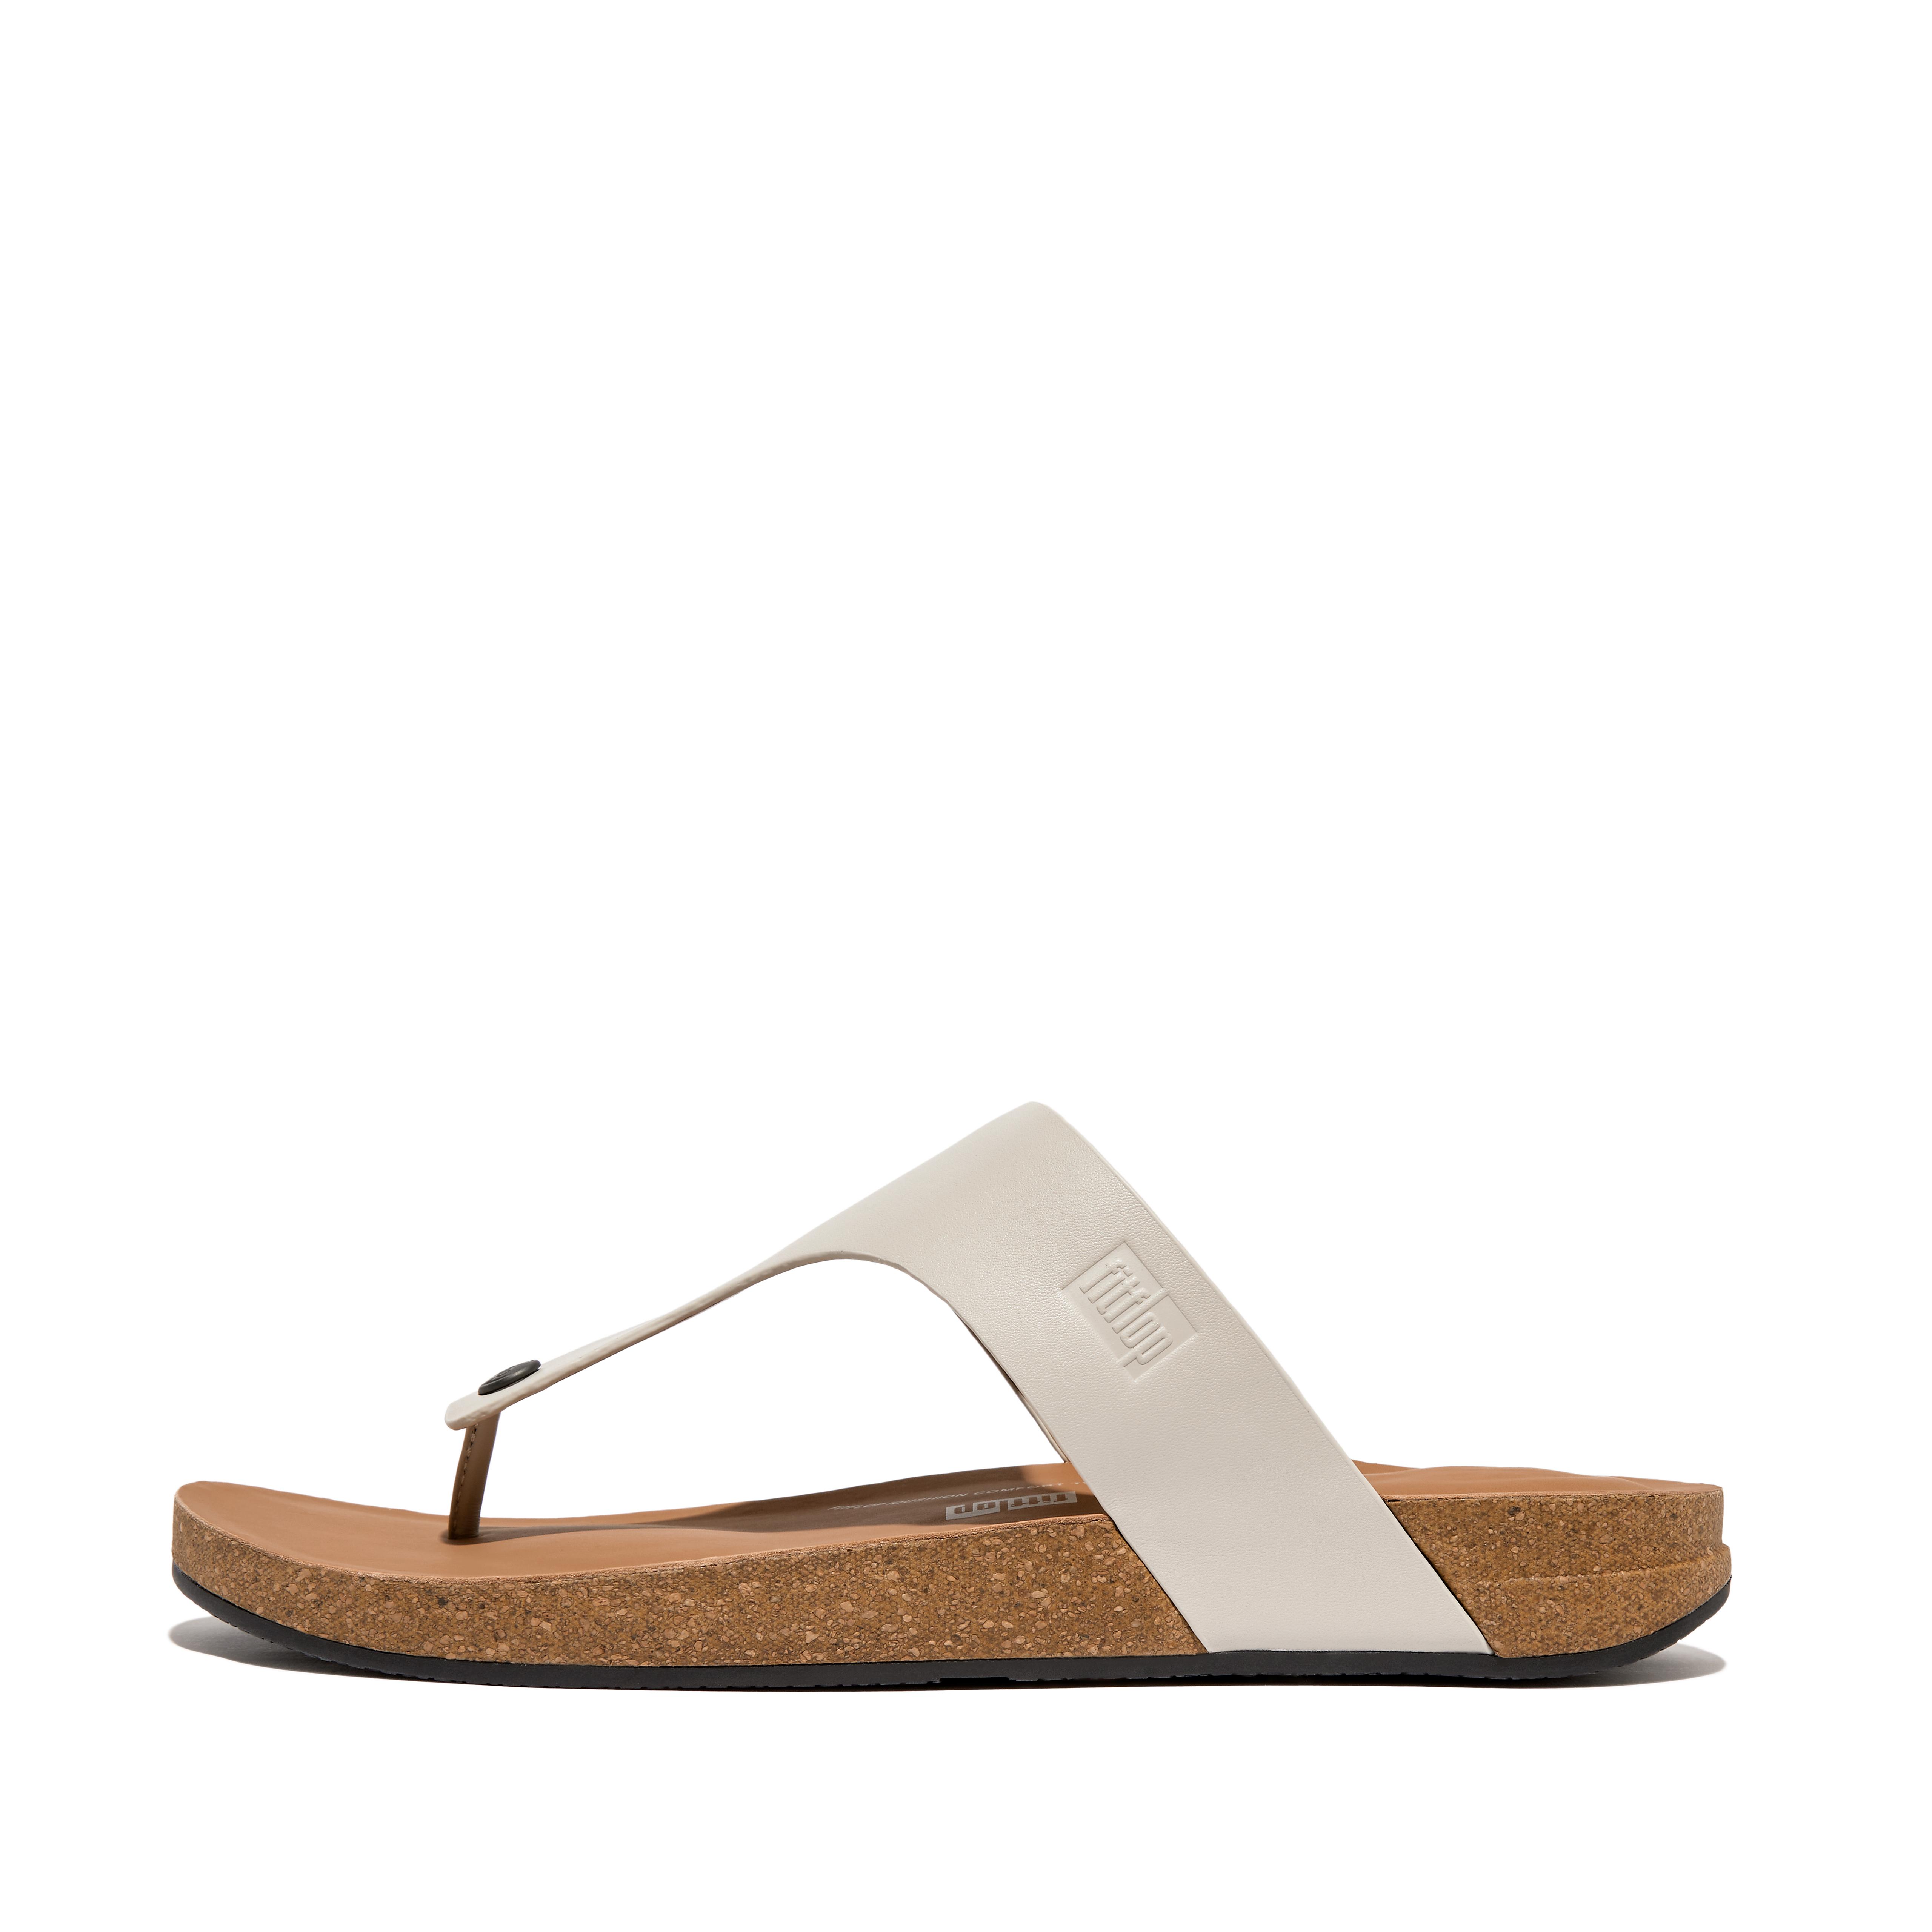 핏플랍 Fitflop Leather Toe-Post Sandals,Clay Grey